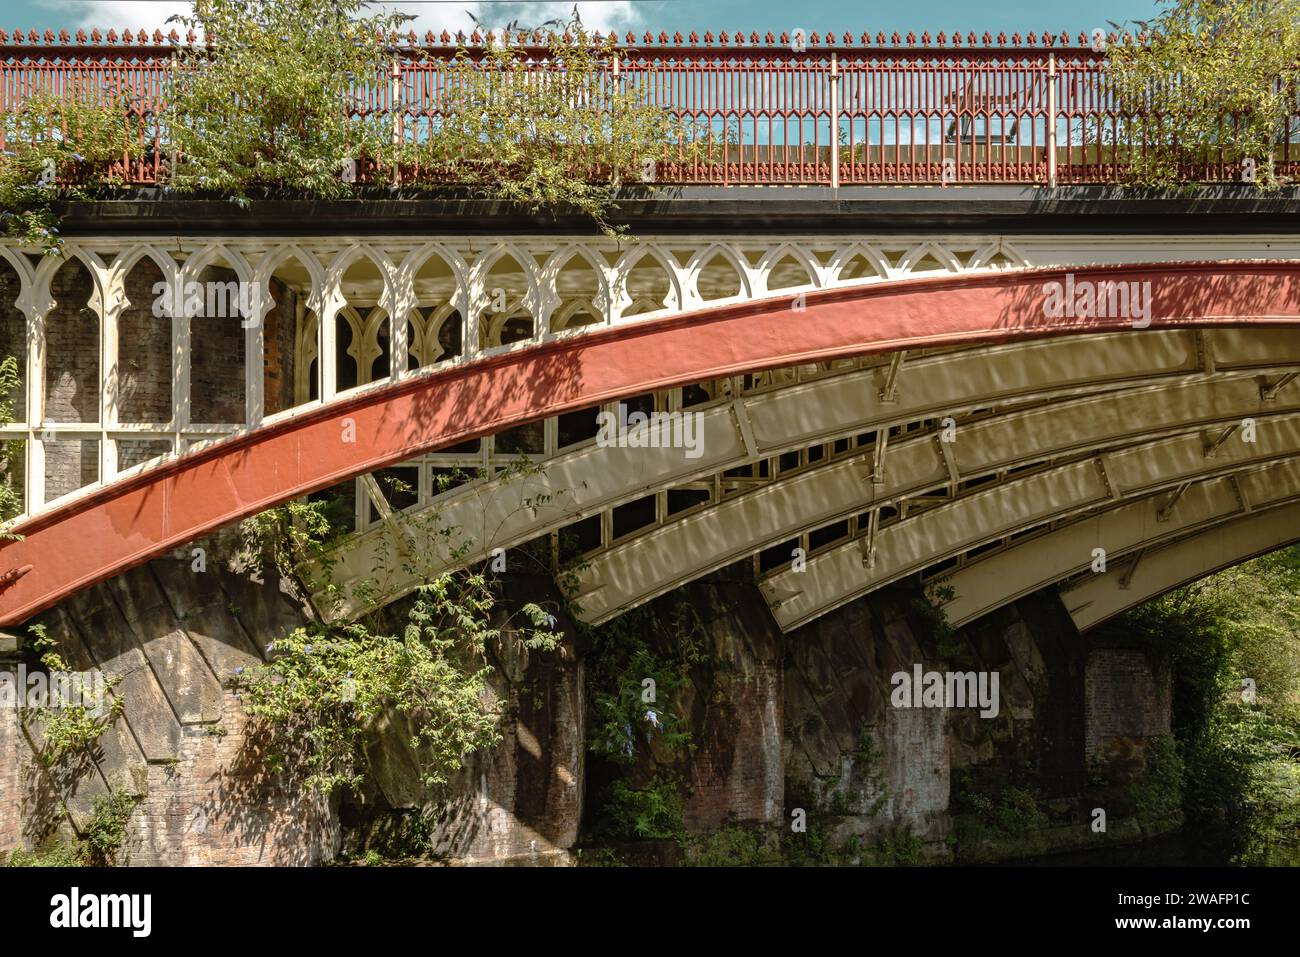 Dettaglio della bellezza architettonica di un ponte ferroviario vittoriano rosso e bianco. Esempio di eleganza e ingegneria vittoriana. Foto Stock